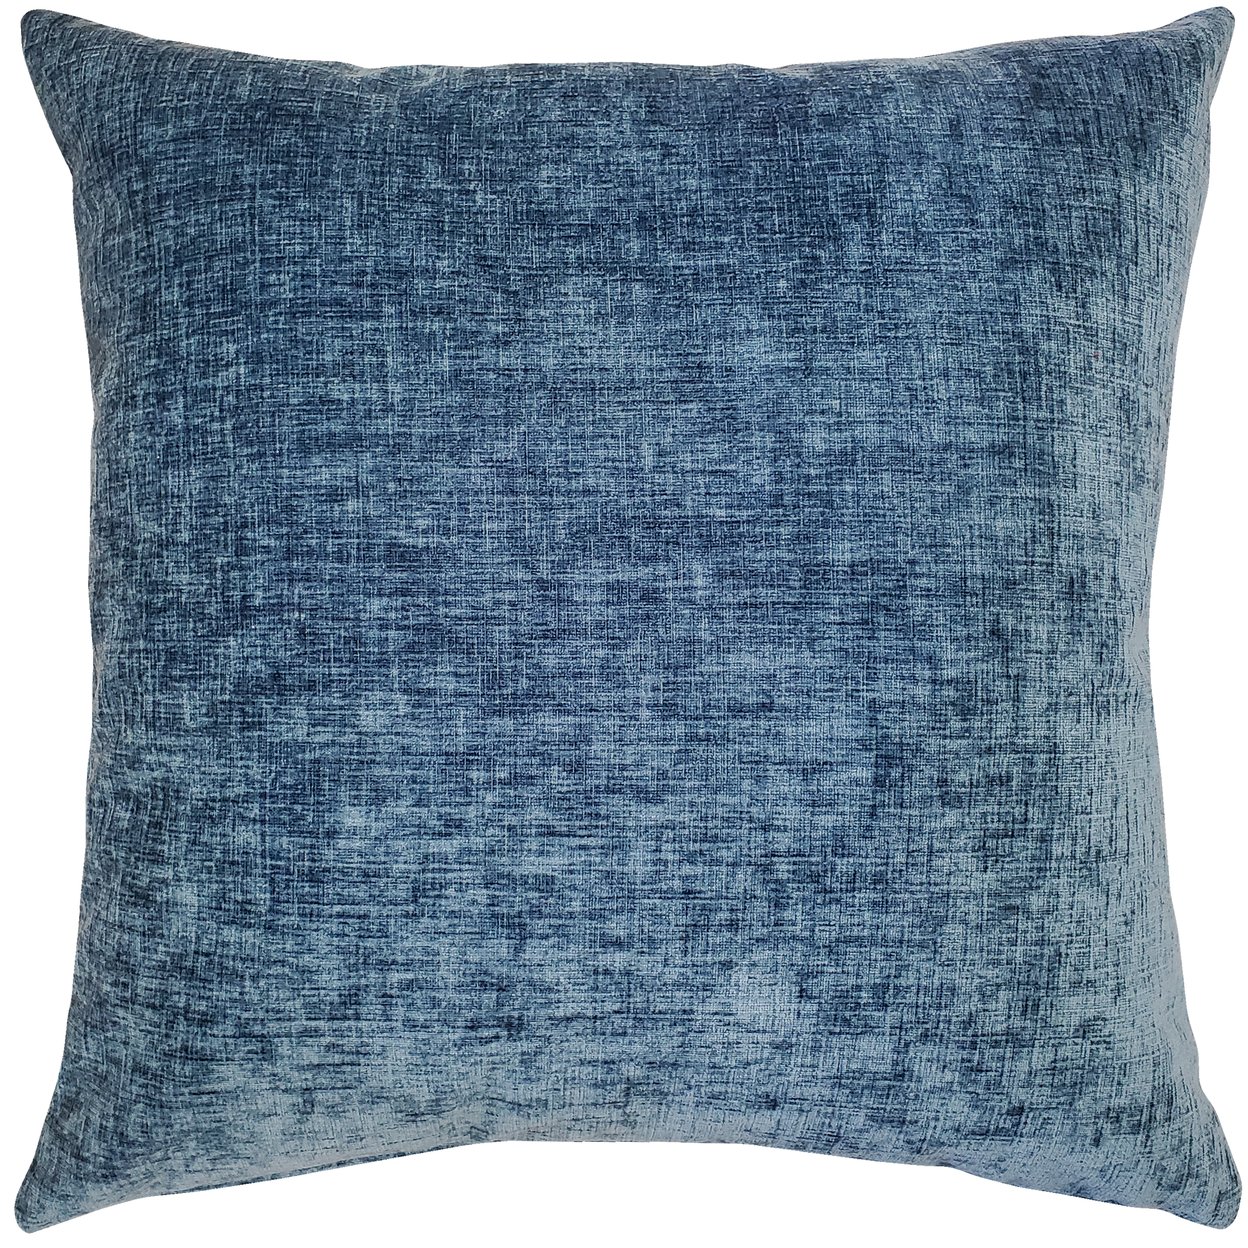 Venetian Velvet Agean Blue Throw Pillow 20x20, With Polyfill Insert